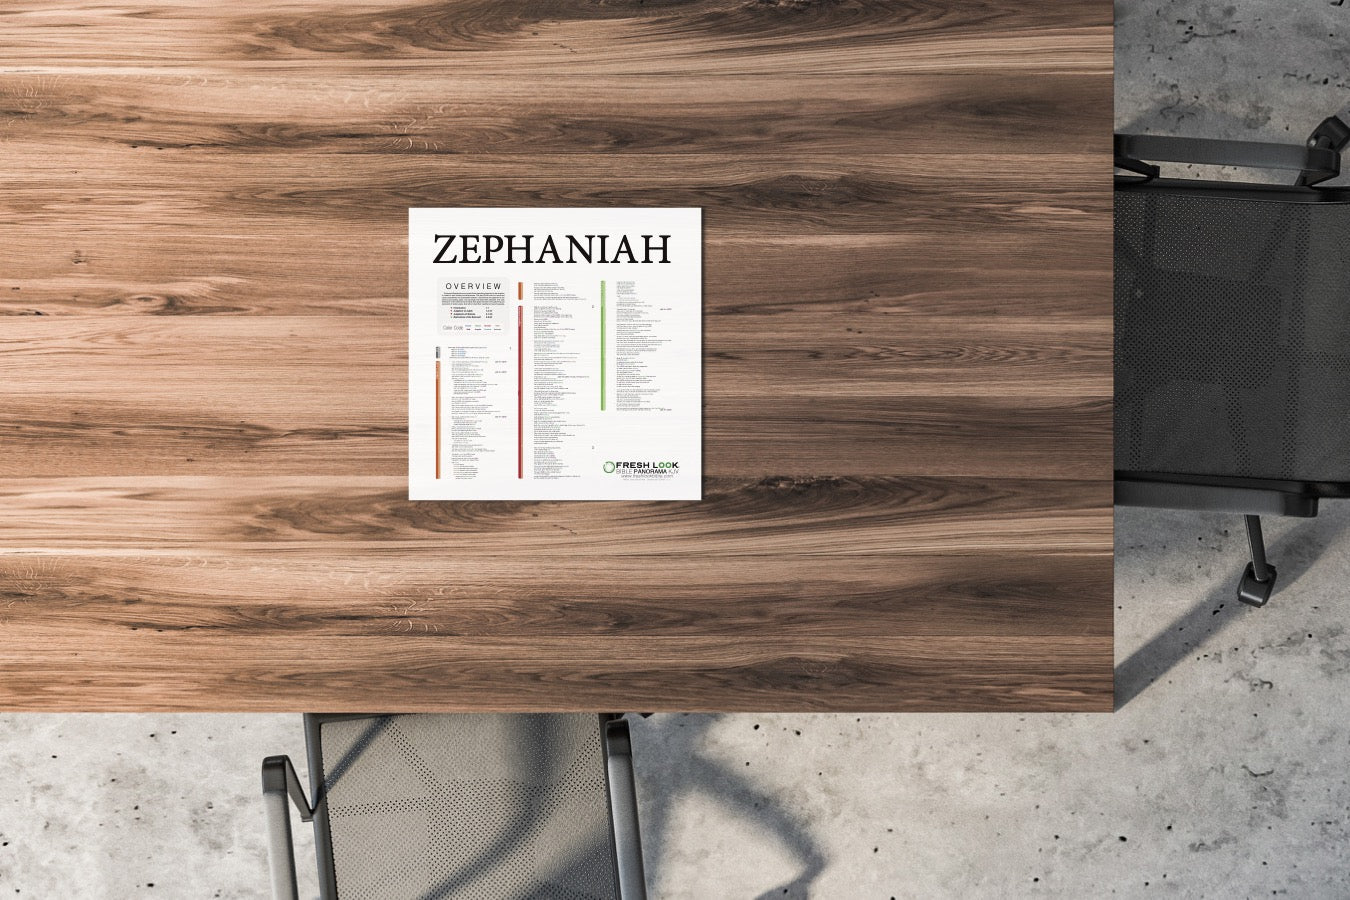 Zephaniah Panorama Laminated